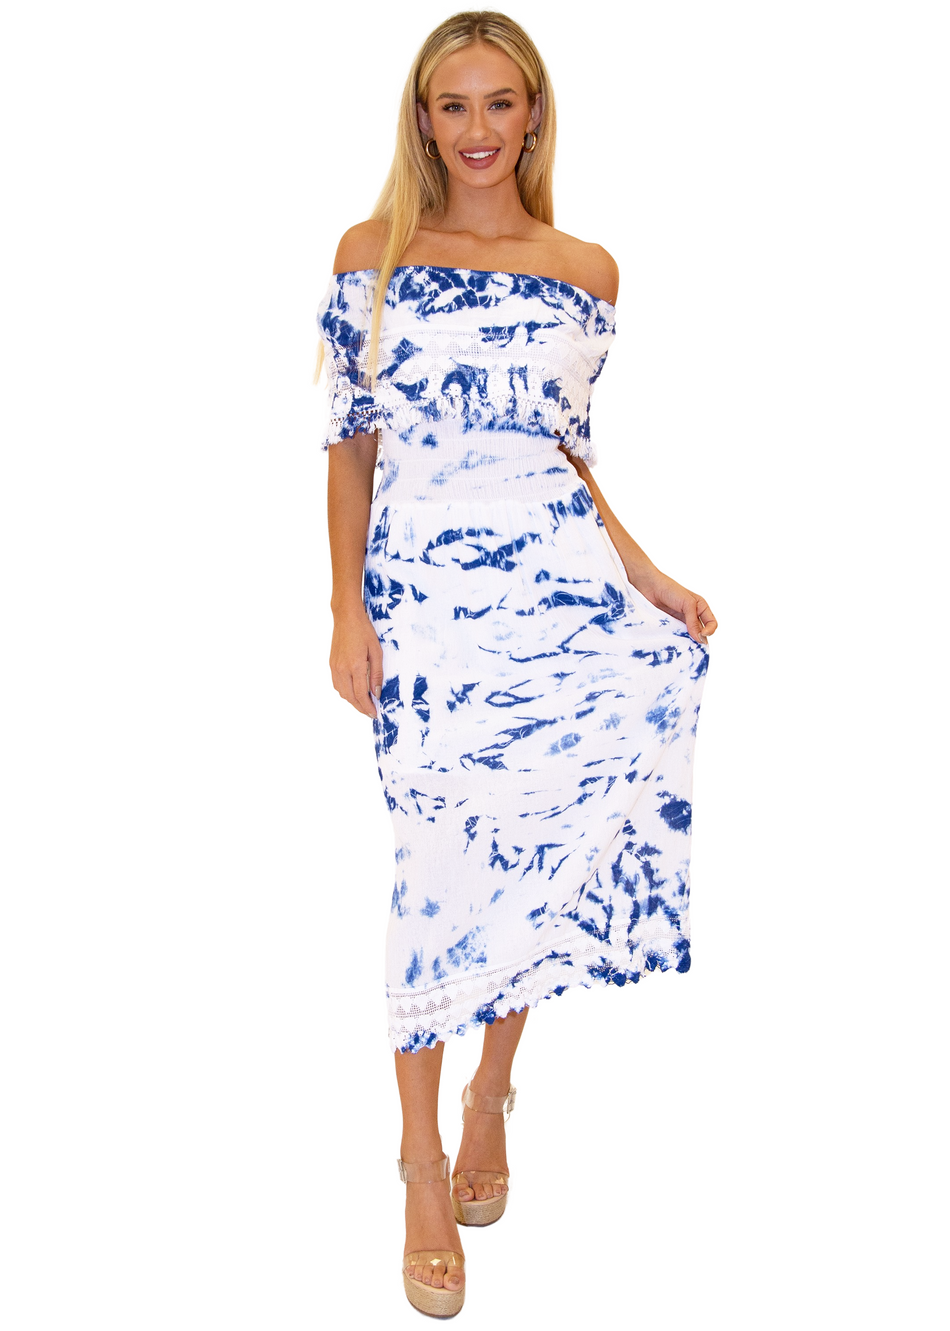 NW1079 - Tie-Dye Blue Cotton Dress